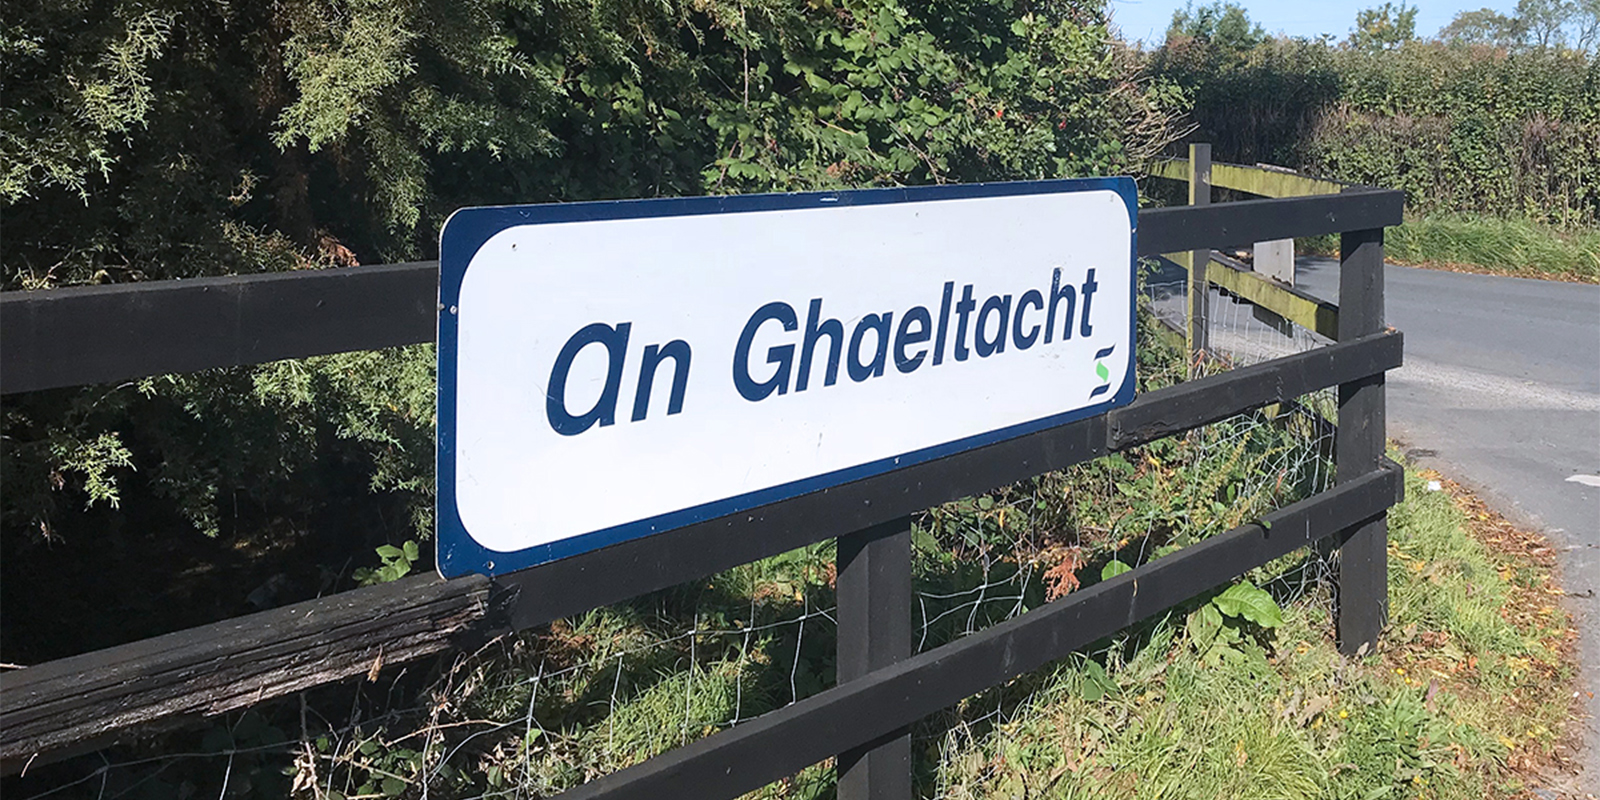 Forbairt Gaelcholáiste ina céim i dtreo ceantar ‘Gaeltachta’ a bhunú in oirthear Phort Láirge